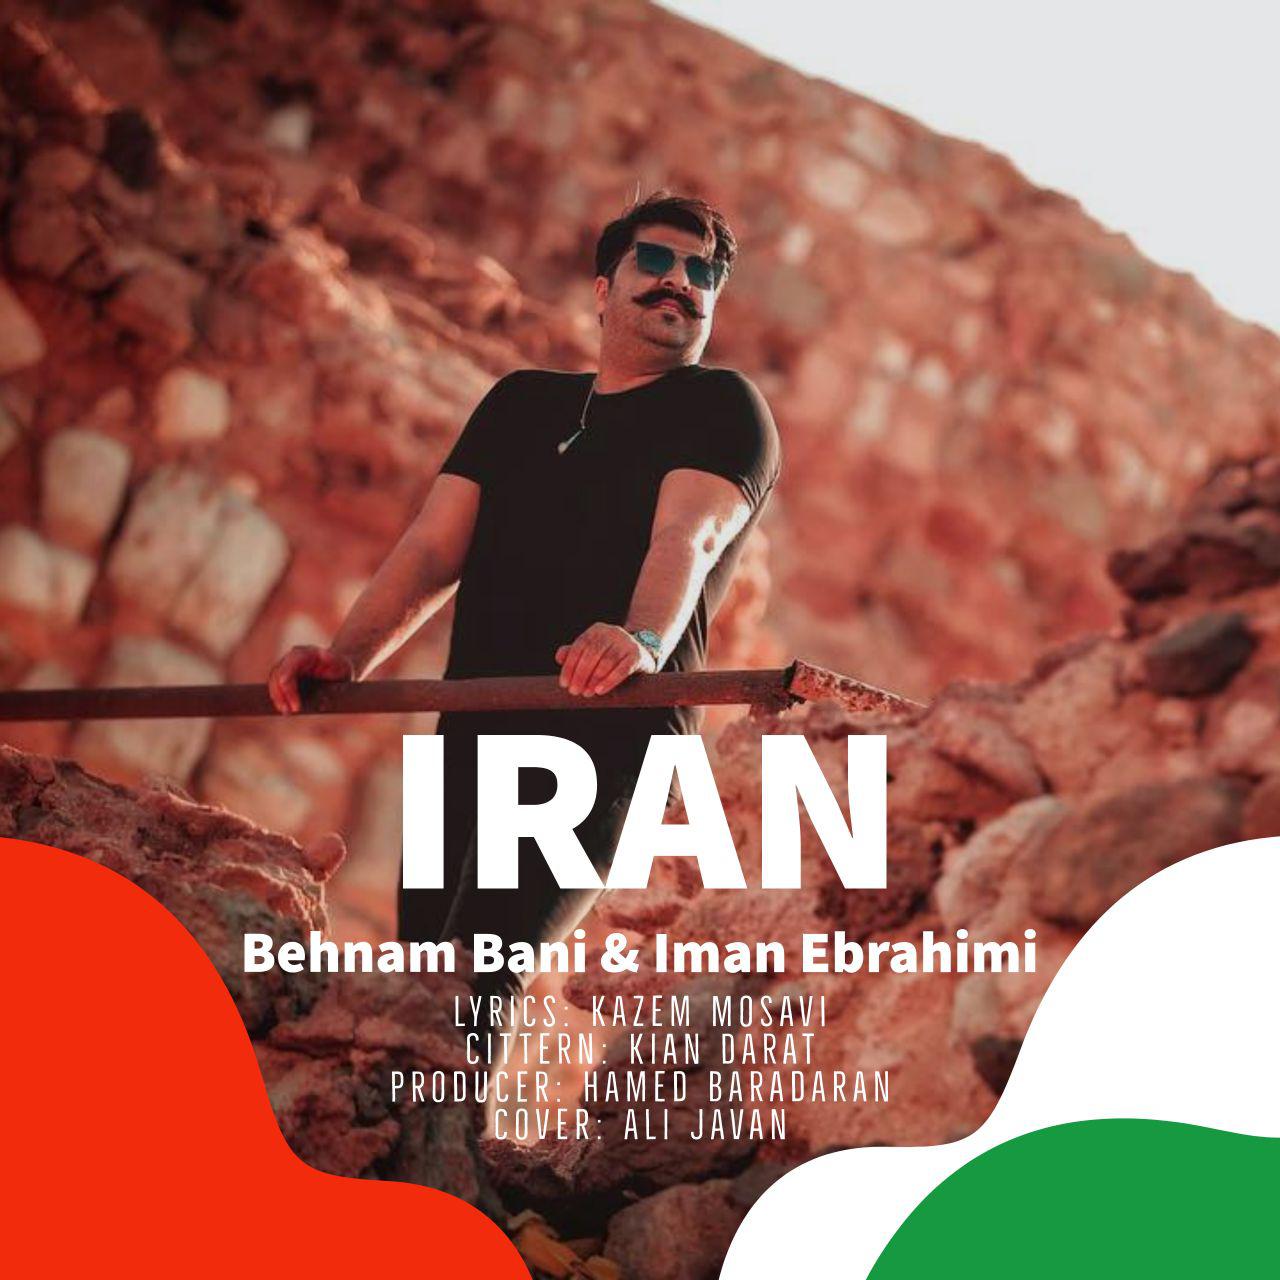 دانلود آهنگ ایران با صدای بهنام بانی و ایمان ابراهیمی